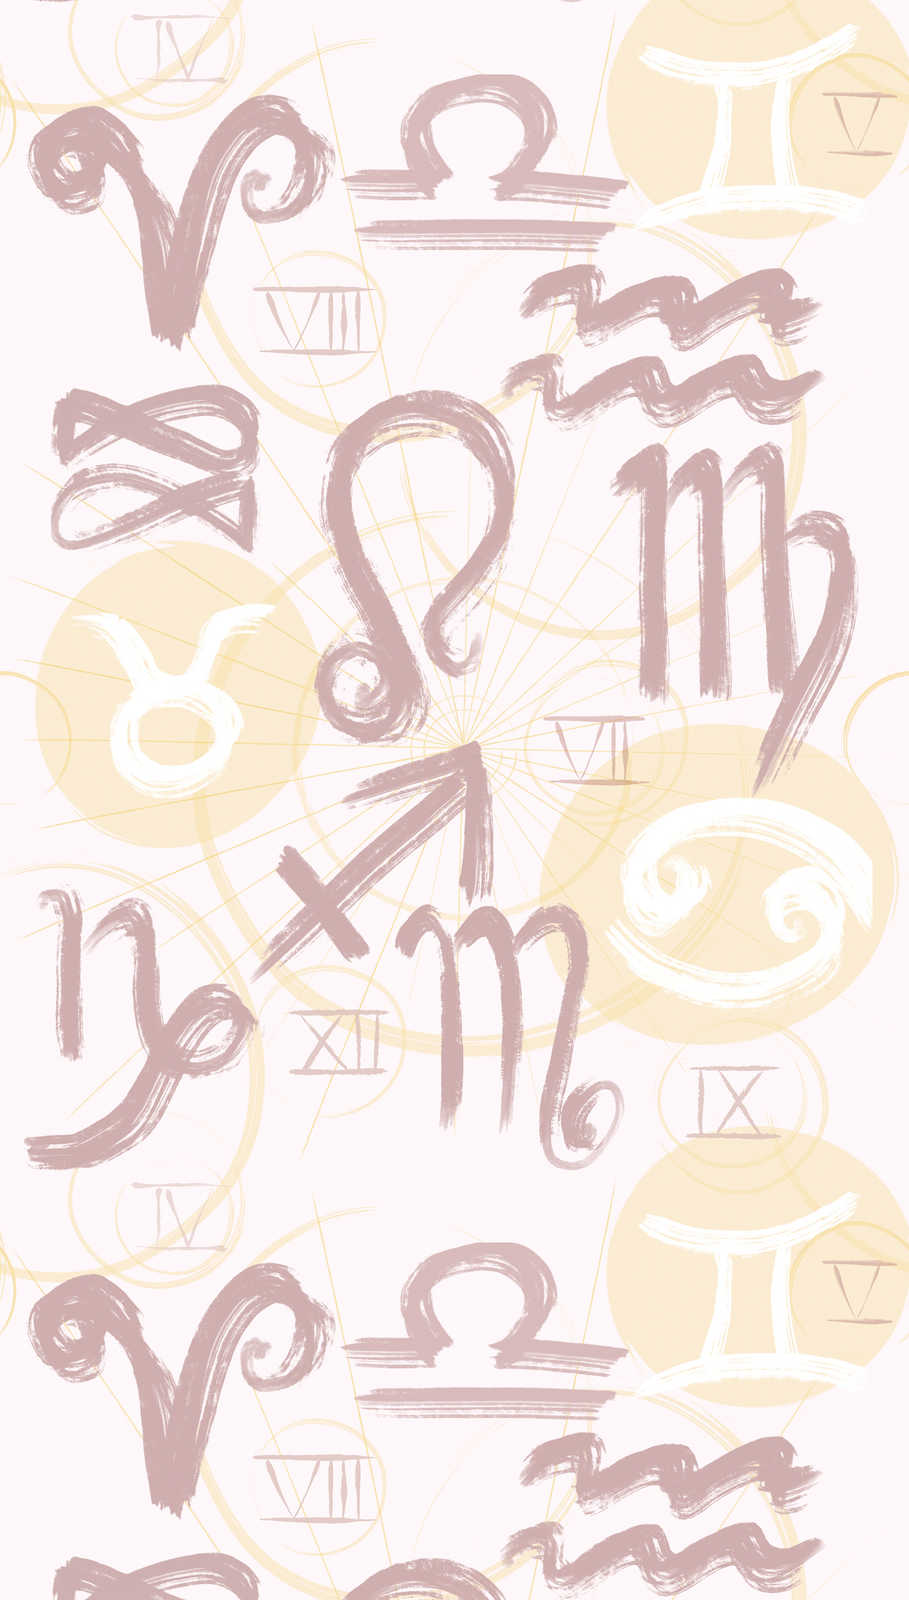             Tapete mit Sternzeichen Symbolen und römischen Zahlen – Creme, Gelb, Rosa
        